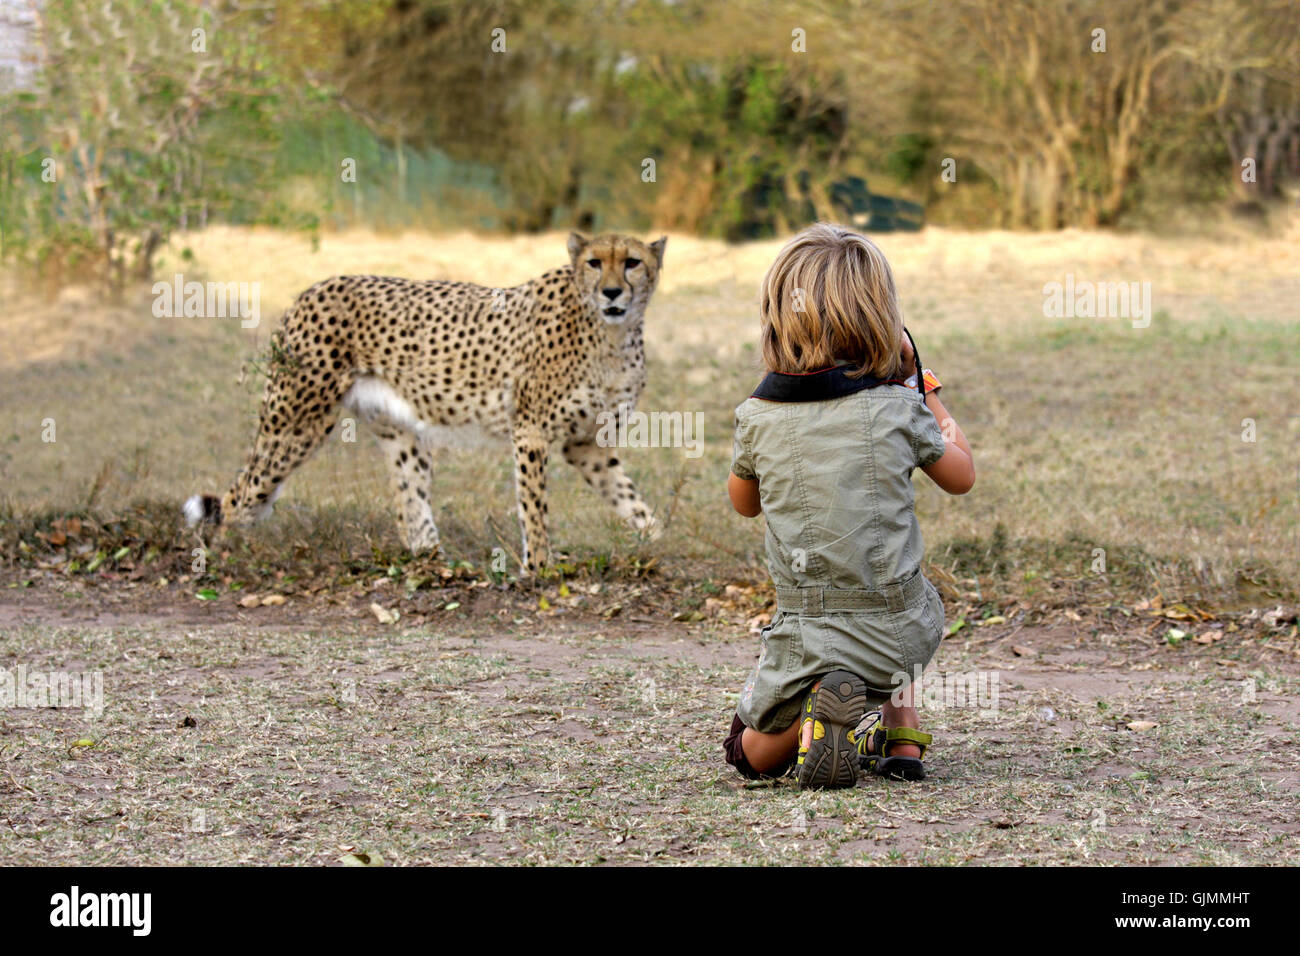 girl photographed cheetah on safari Stock Photo